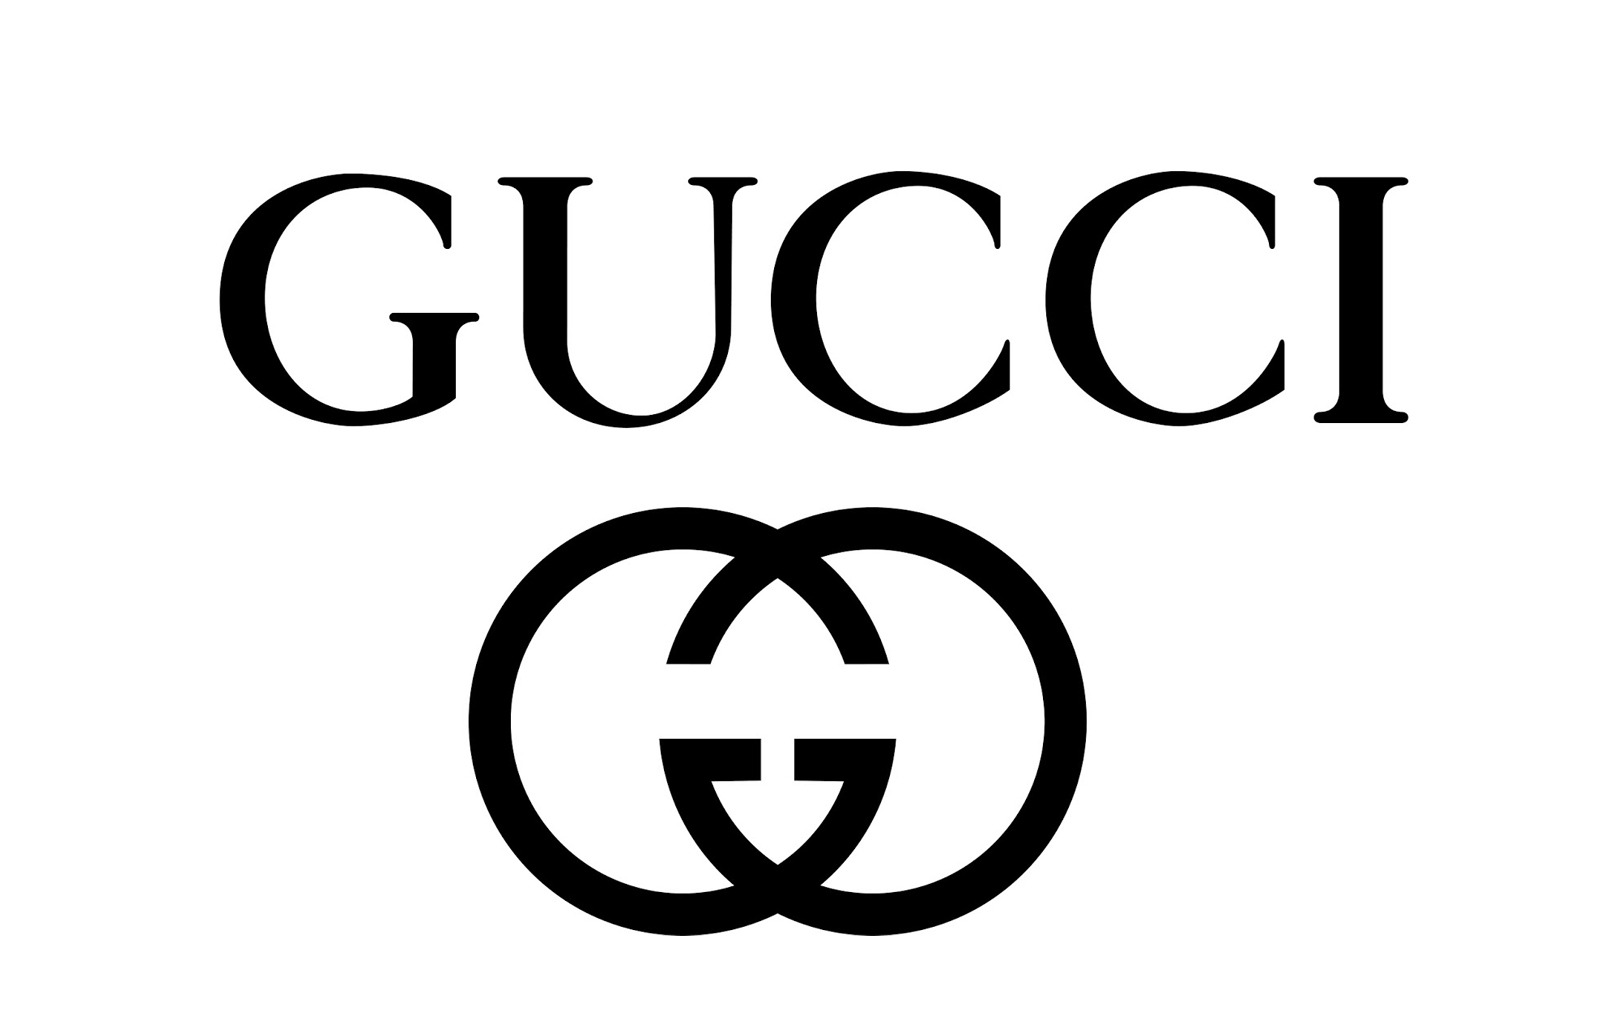 Thương hiệu Gucci